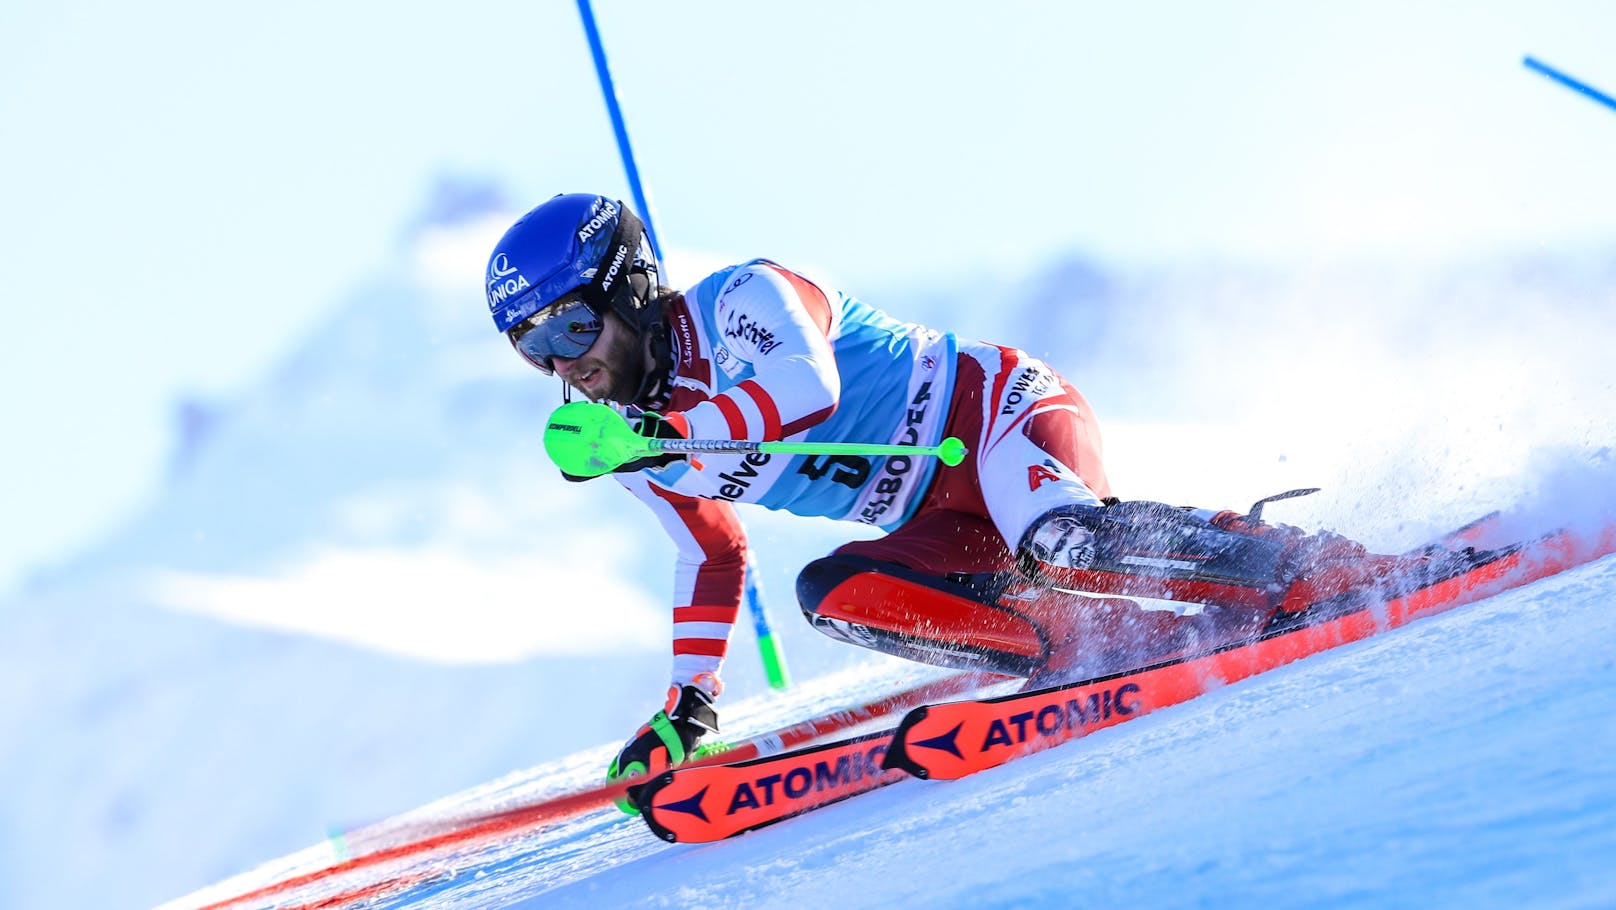 Die Erlösung: Marco Schwarz gewann in Adelboden seinen ersten Weltcup-Slalom. Nach 30 sieglosen Technikrennen war es der erste rot-weiß-rote Triumph nach der Erfolgsära Marcel Hirscher.